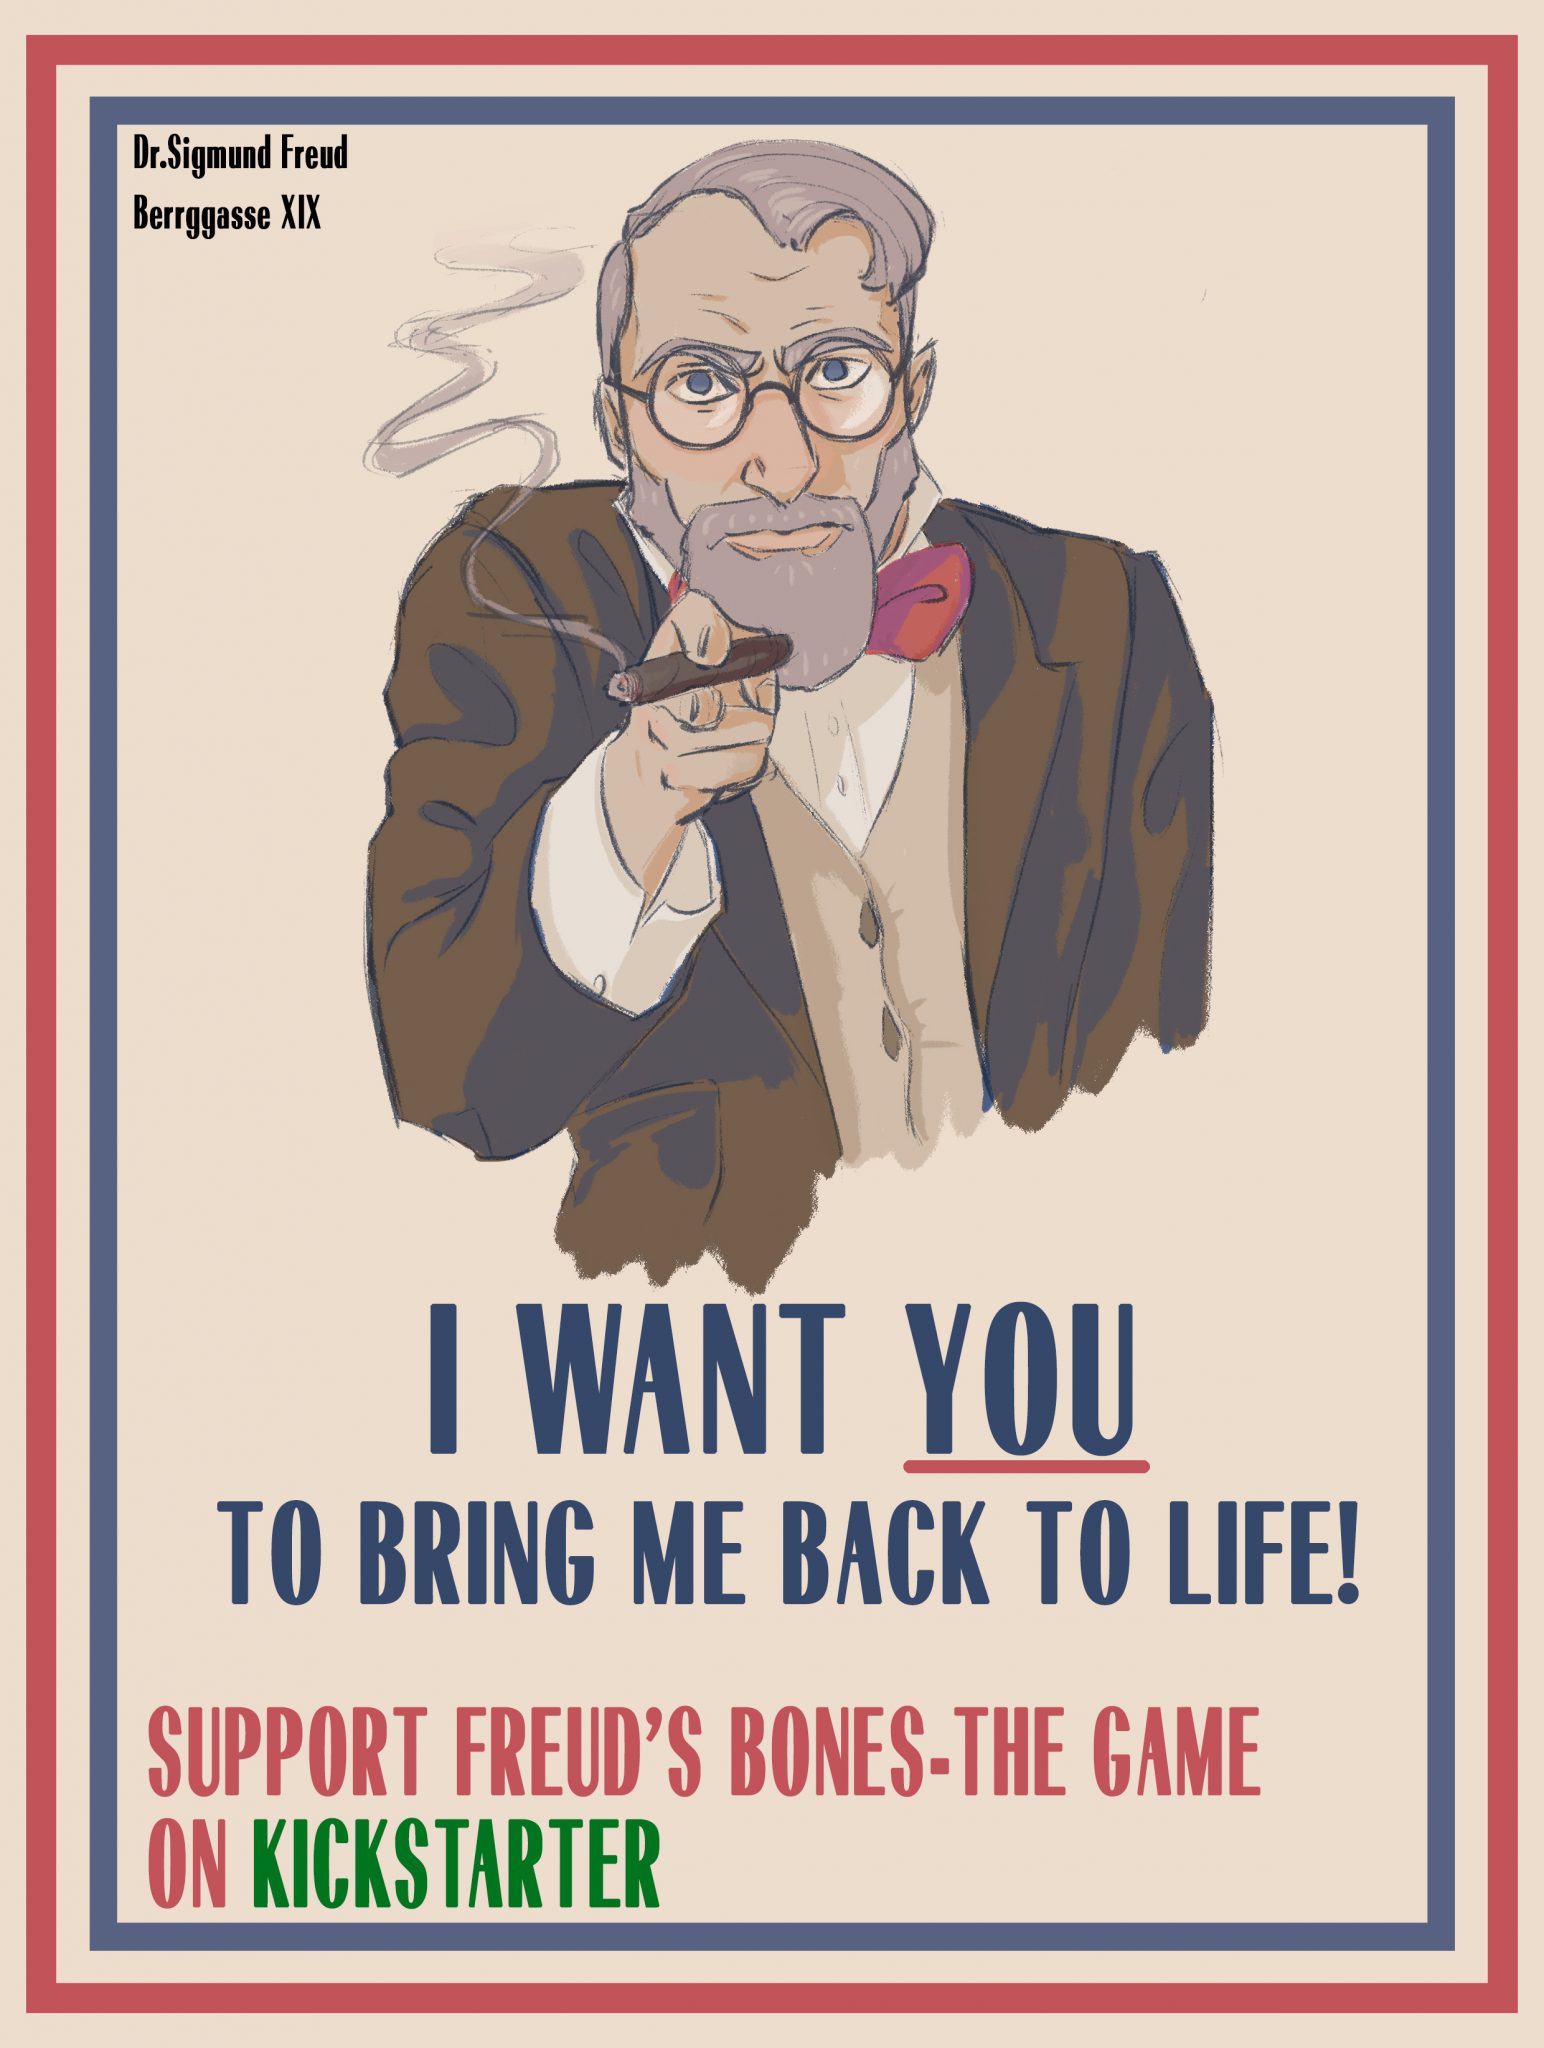 Freud Bones